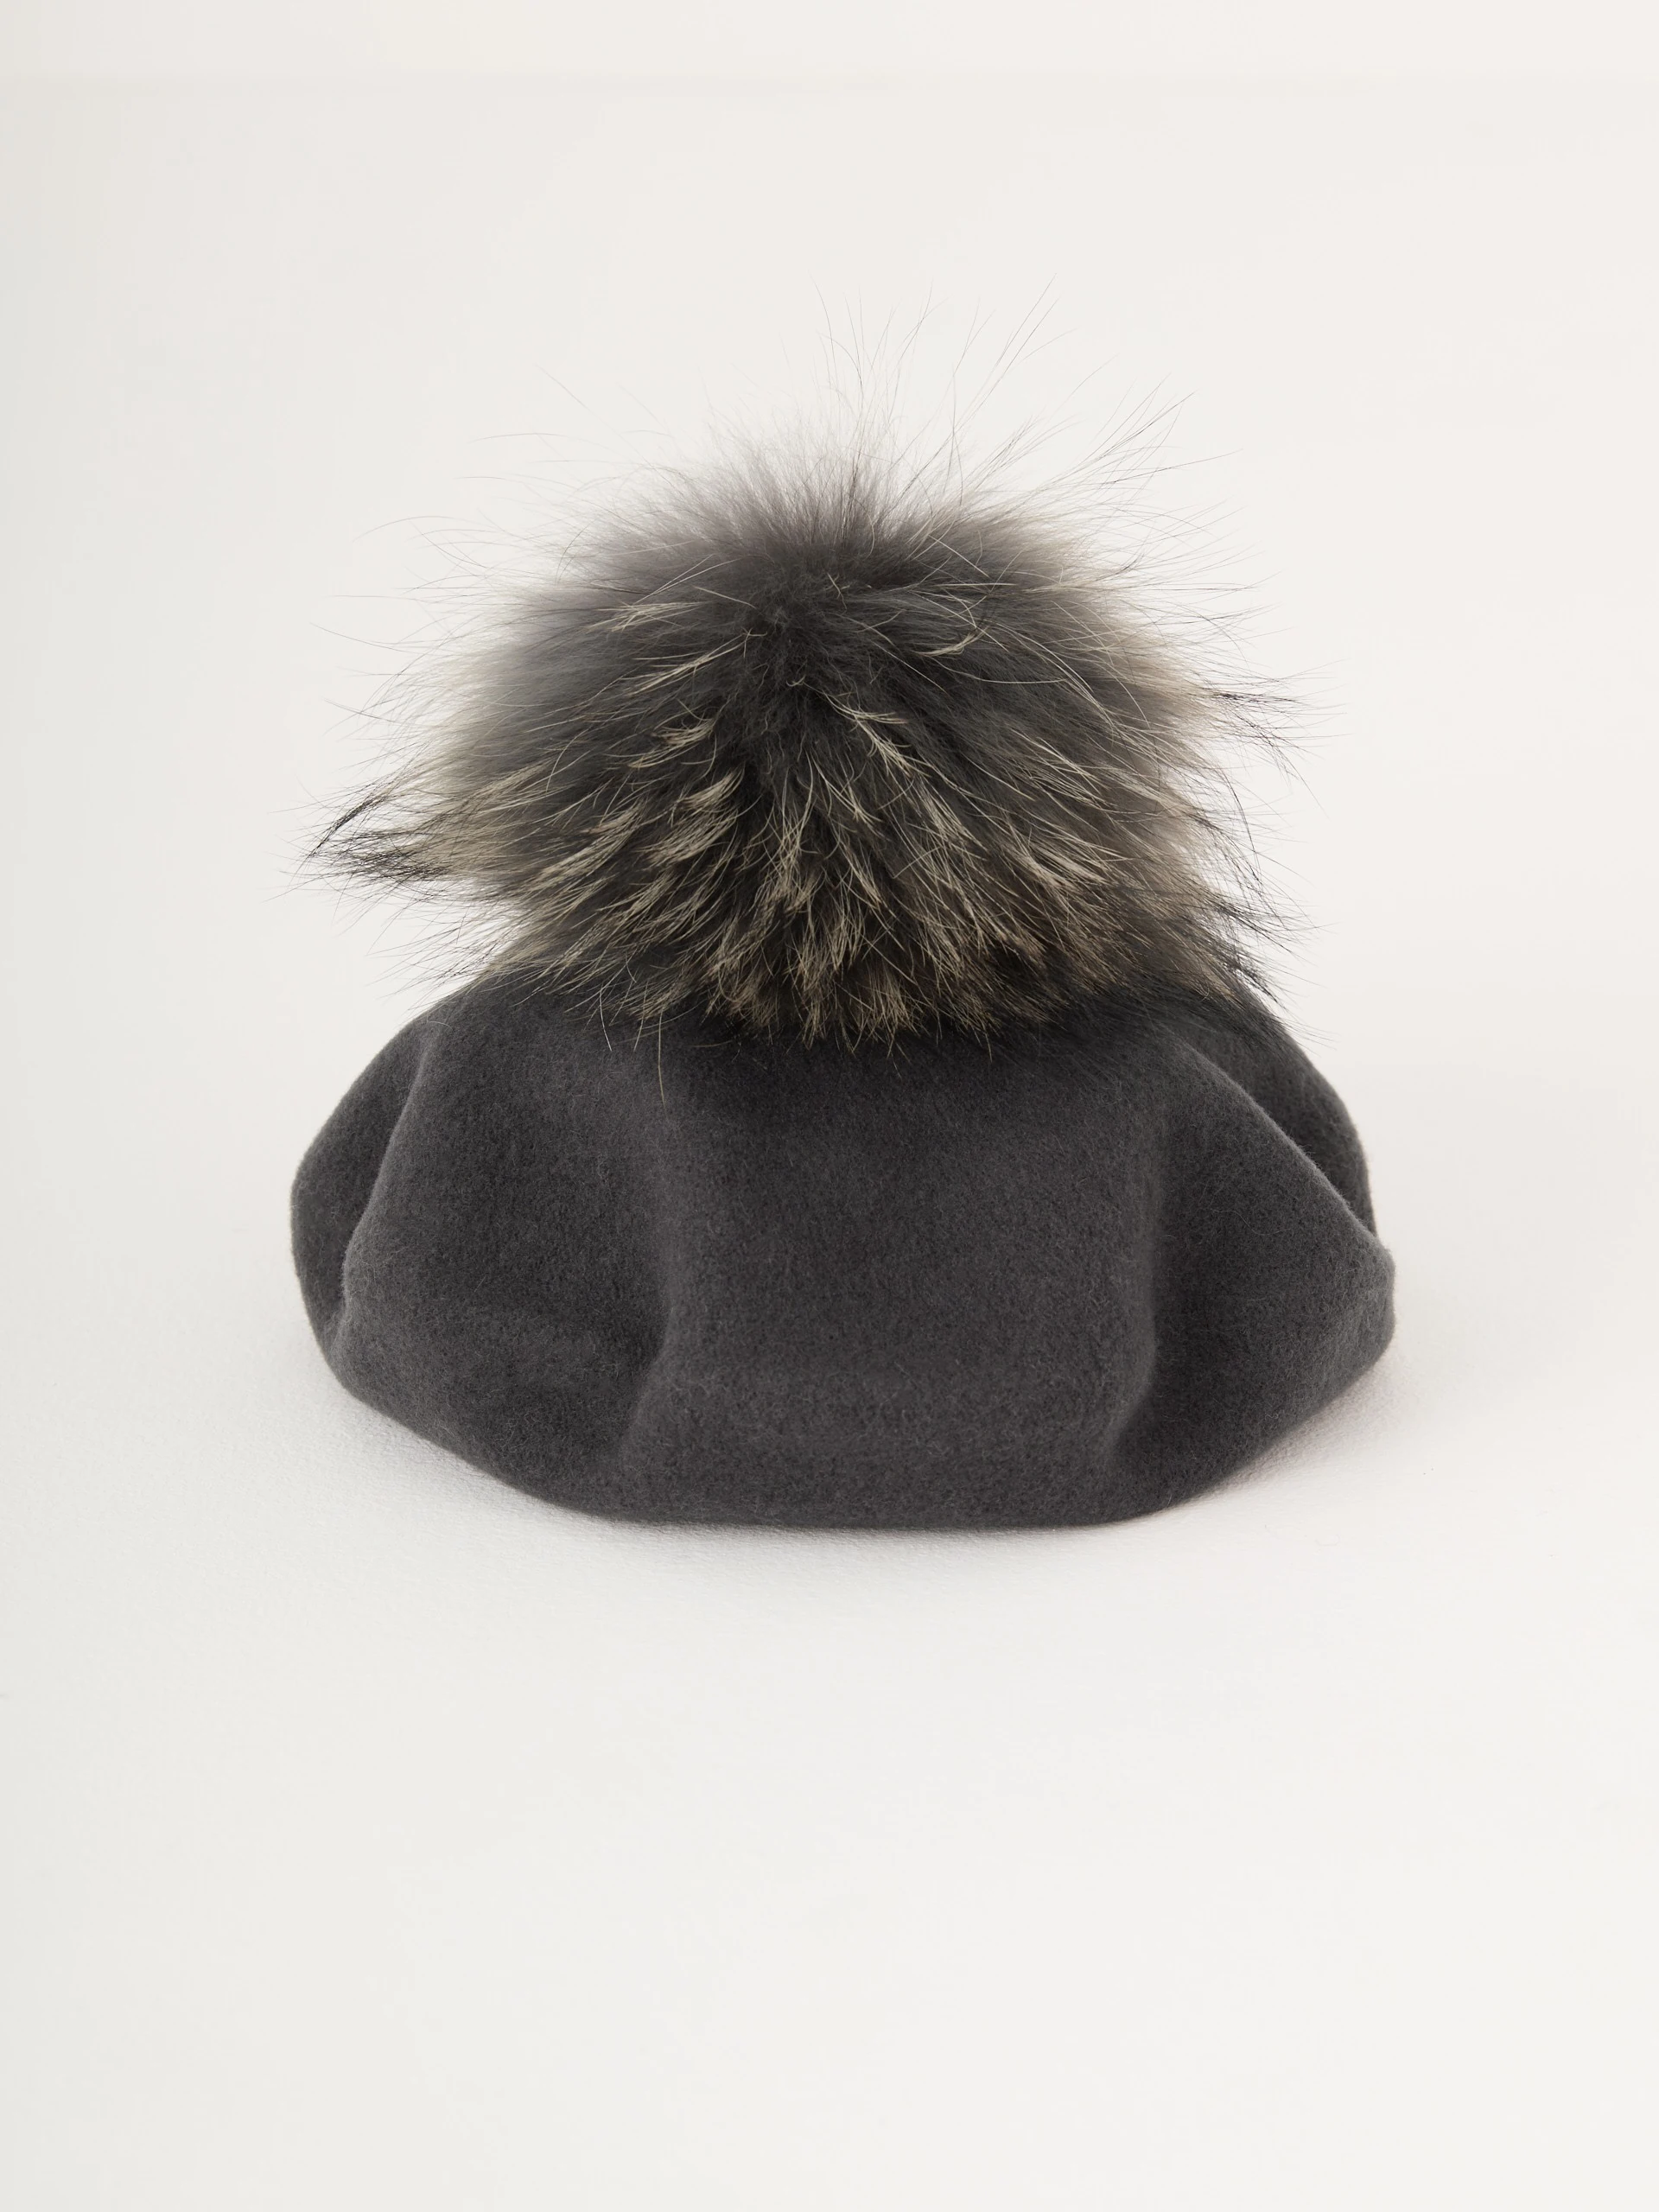 Grey beret with decorative pom-pom